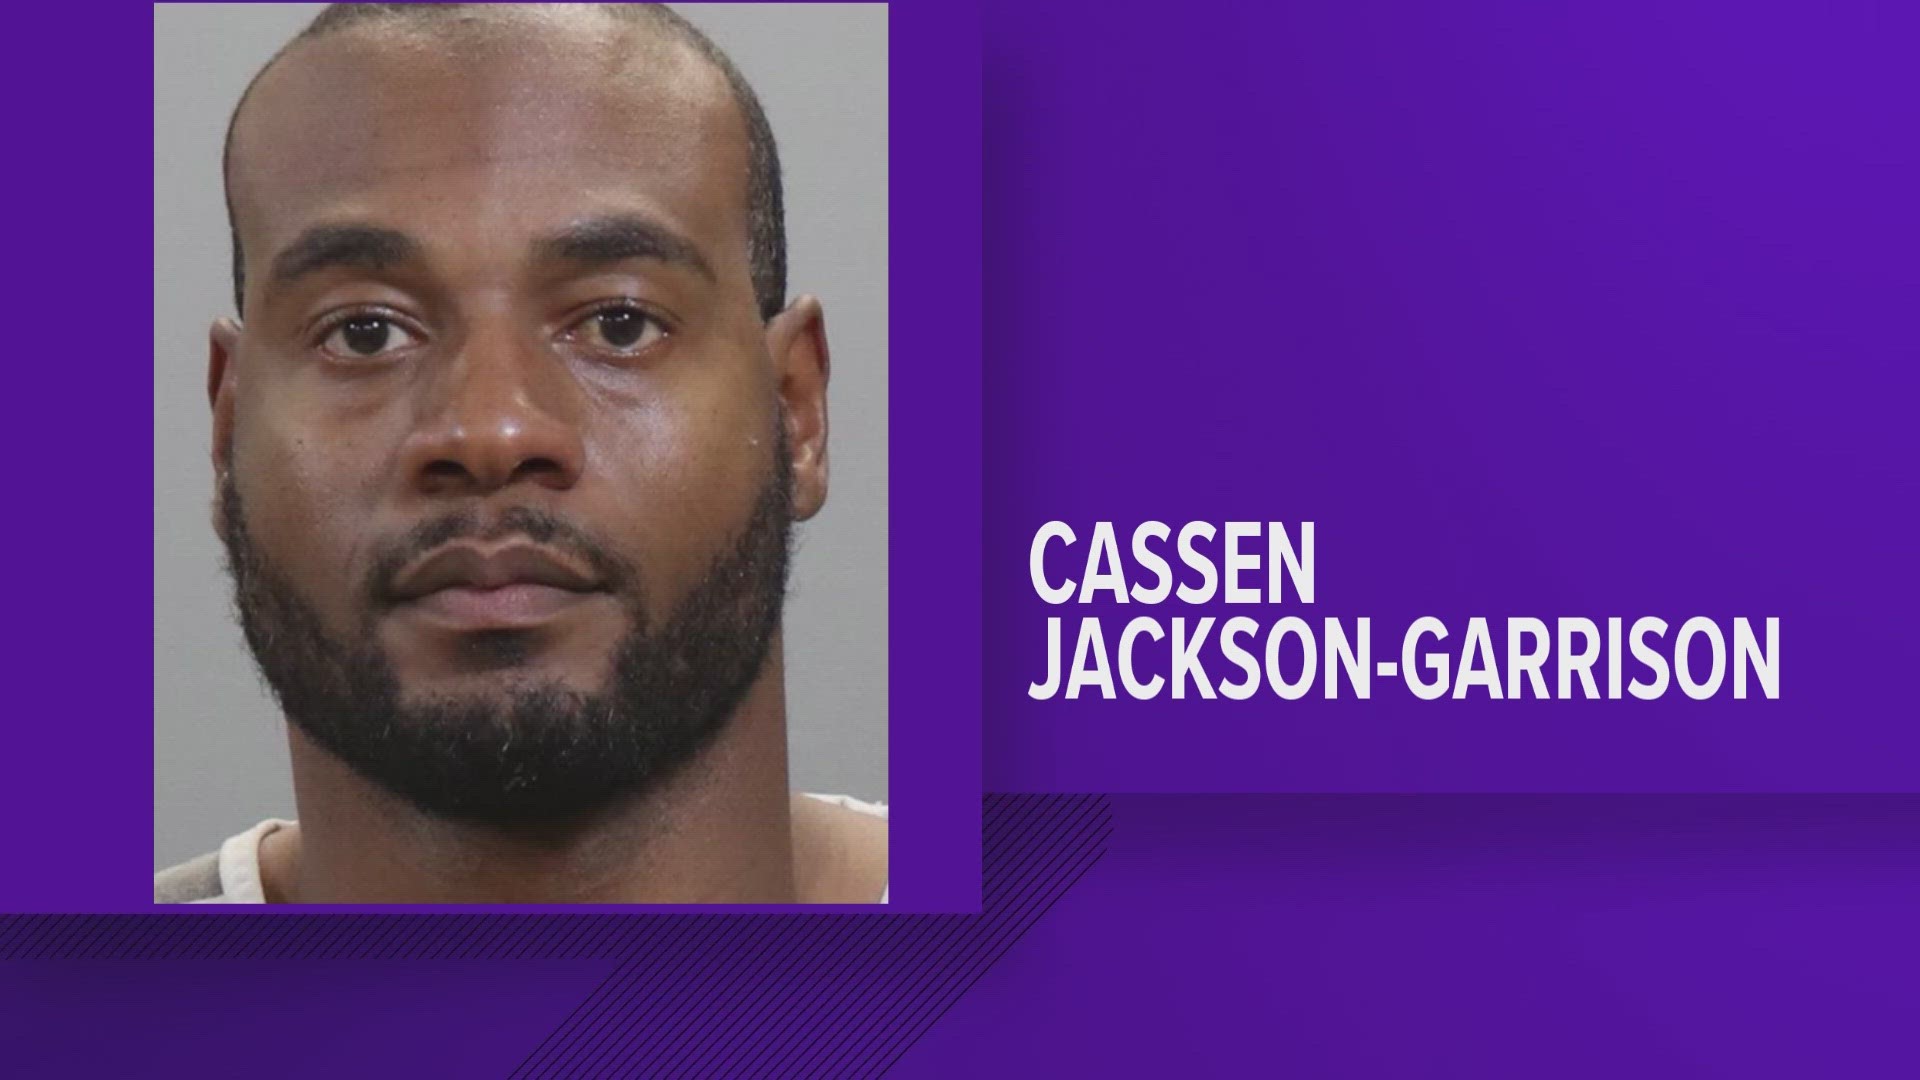 Judge Steve Sword sentenced Cassen Jackson-Garrison on Friday.